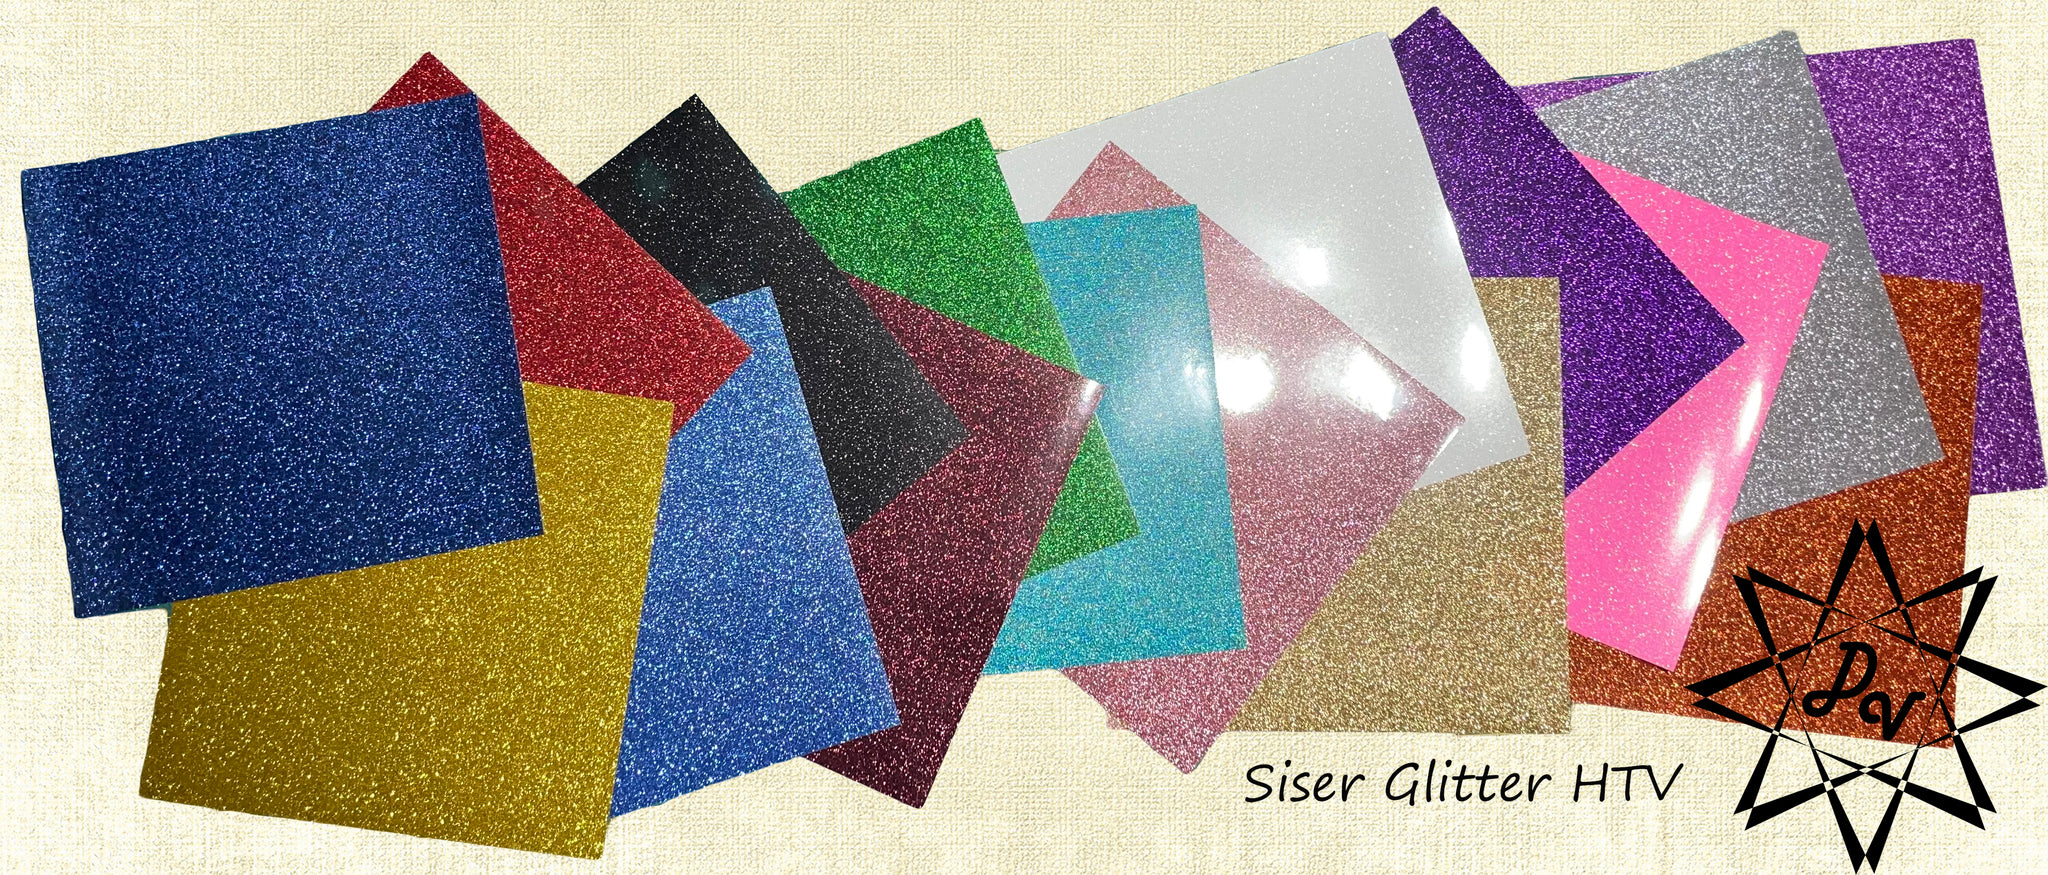 Siser Glitter Heat Transfer Vinyl Sheets, REAL Glitter and Tons of